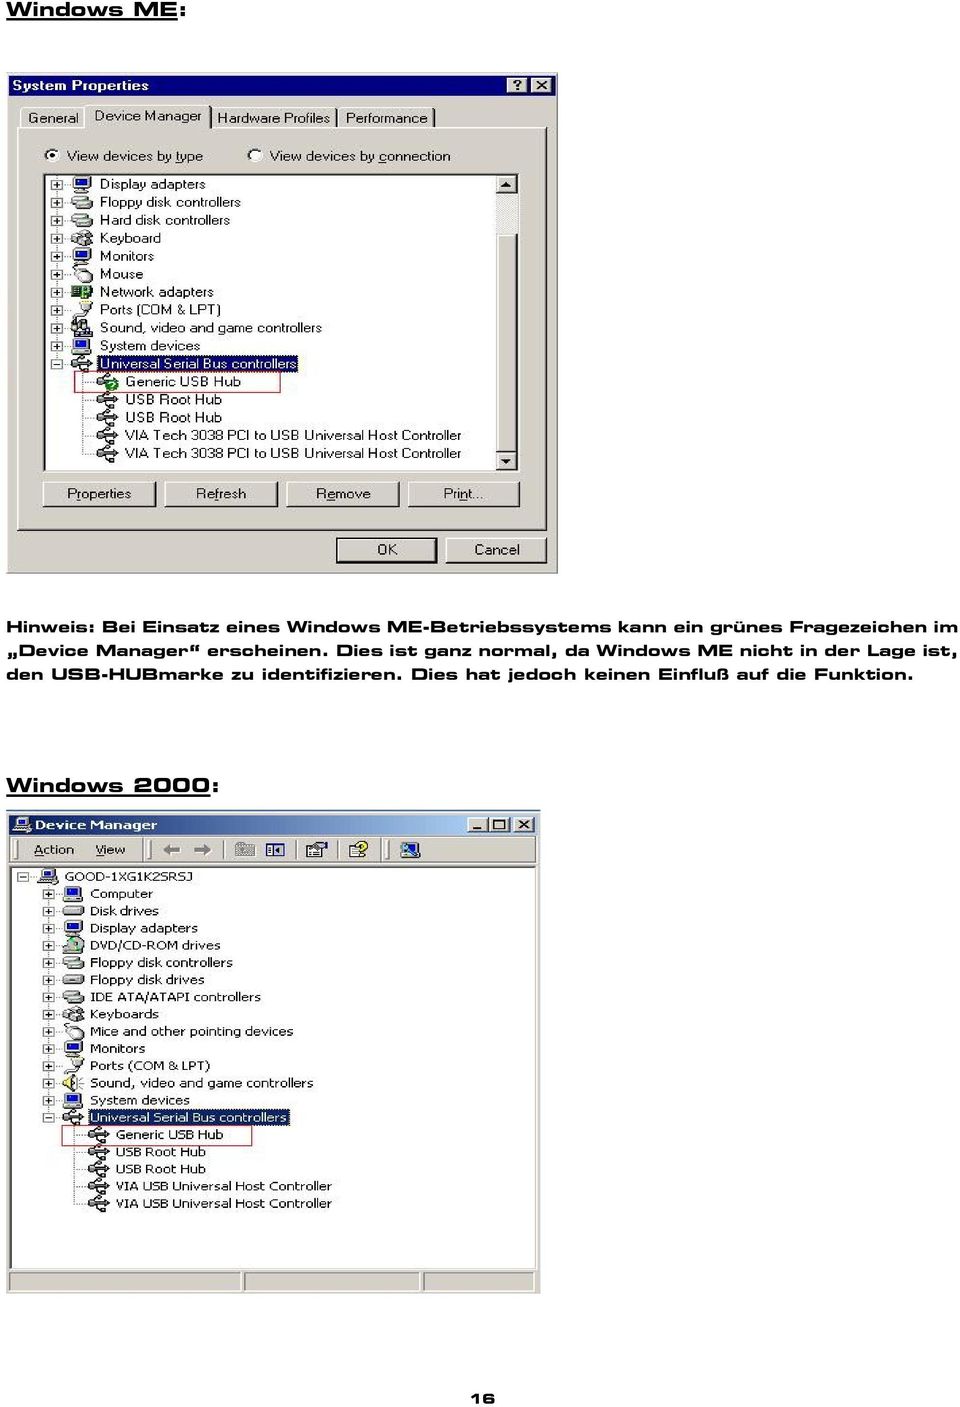 Dies ist ganz normal, da Windows ME nicht in der Lage ist, den